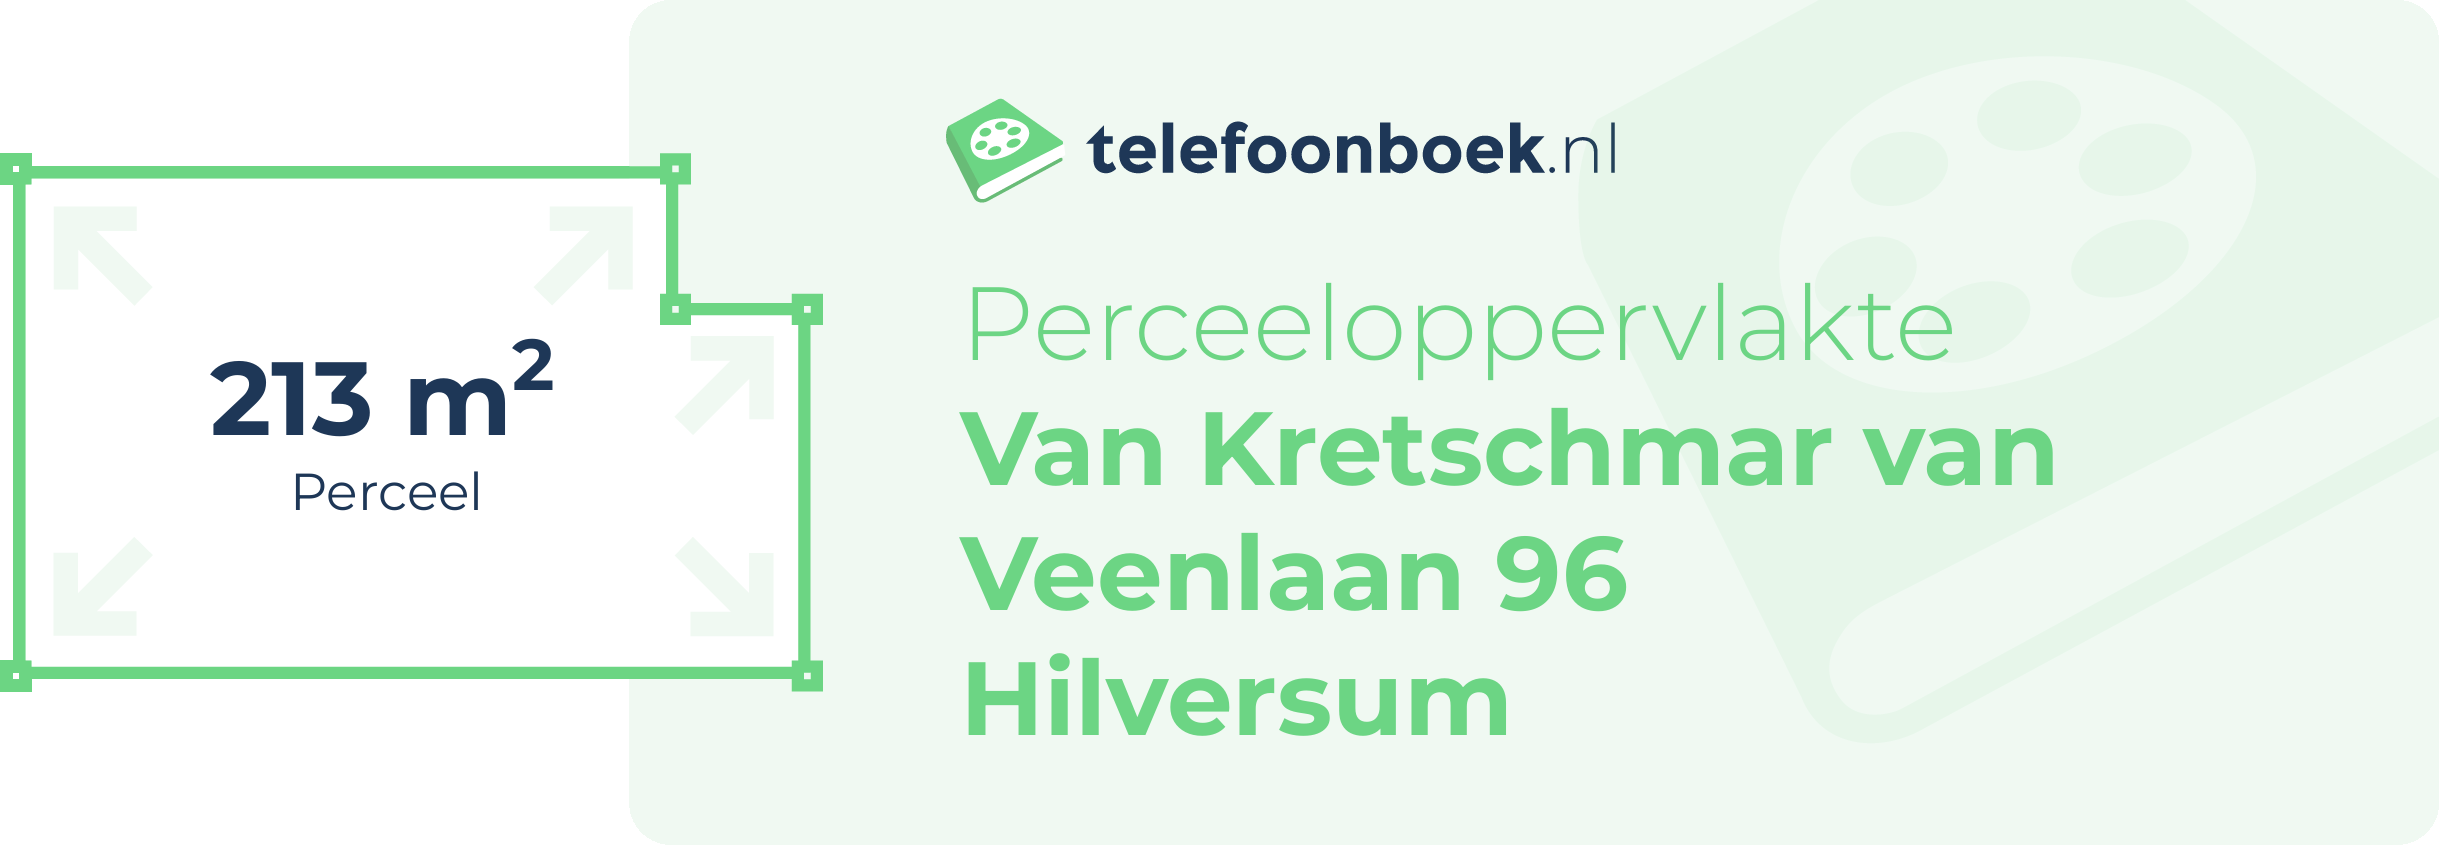 Perceeloppervlakte Van Kretschmar Van Veenlaan 96 Hilversum